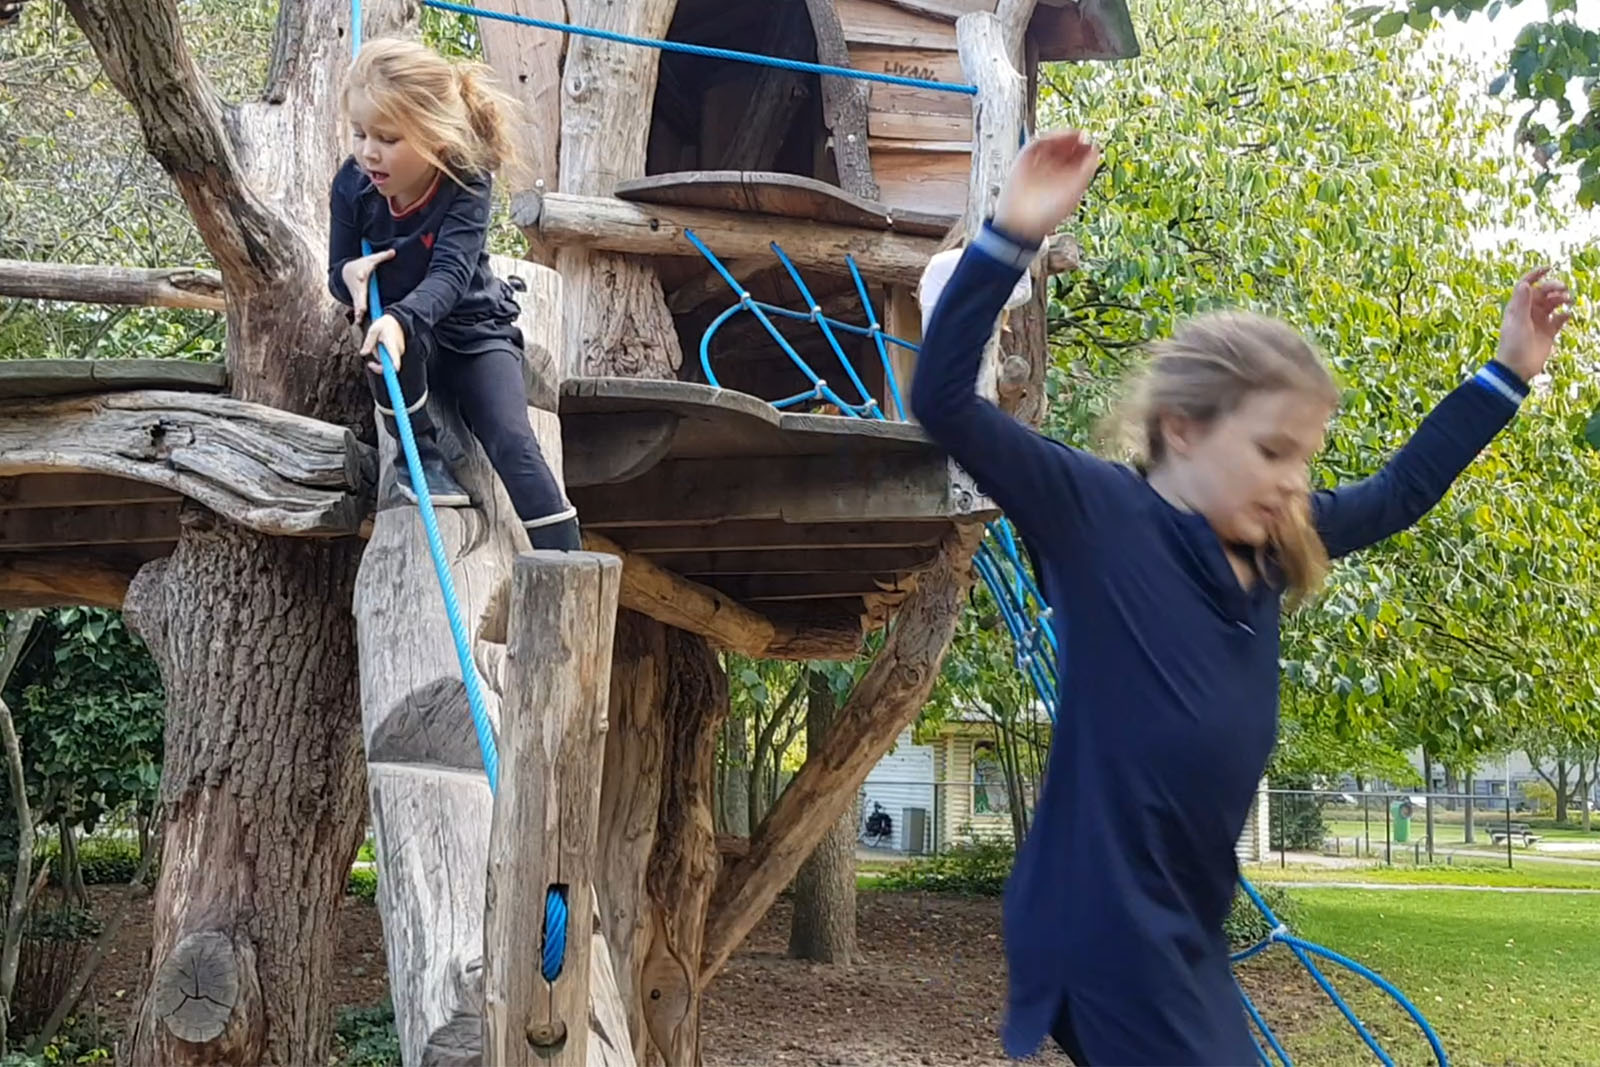 Ongebruikt Corona: 40 dingen die je buiten kunt doen met kids | RTV Focus Zwolle AT-22